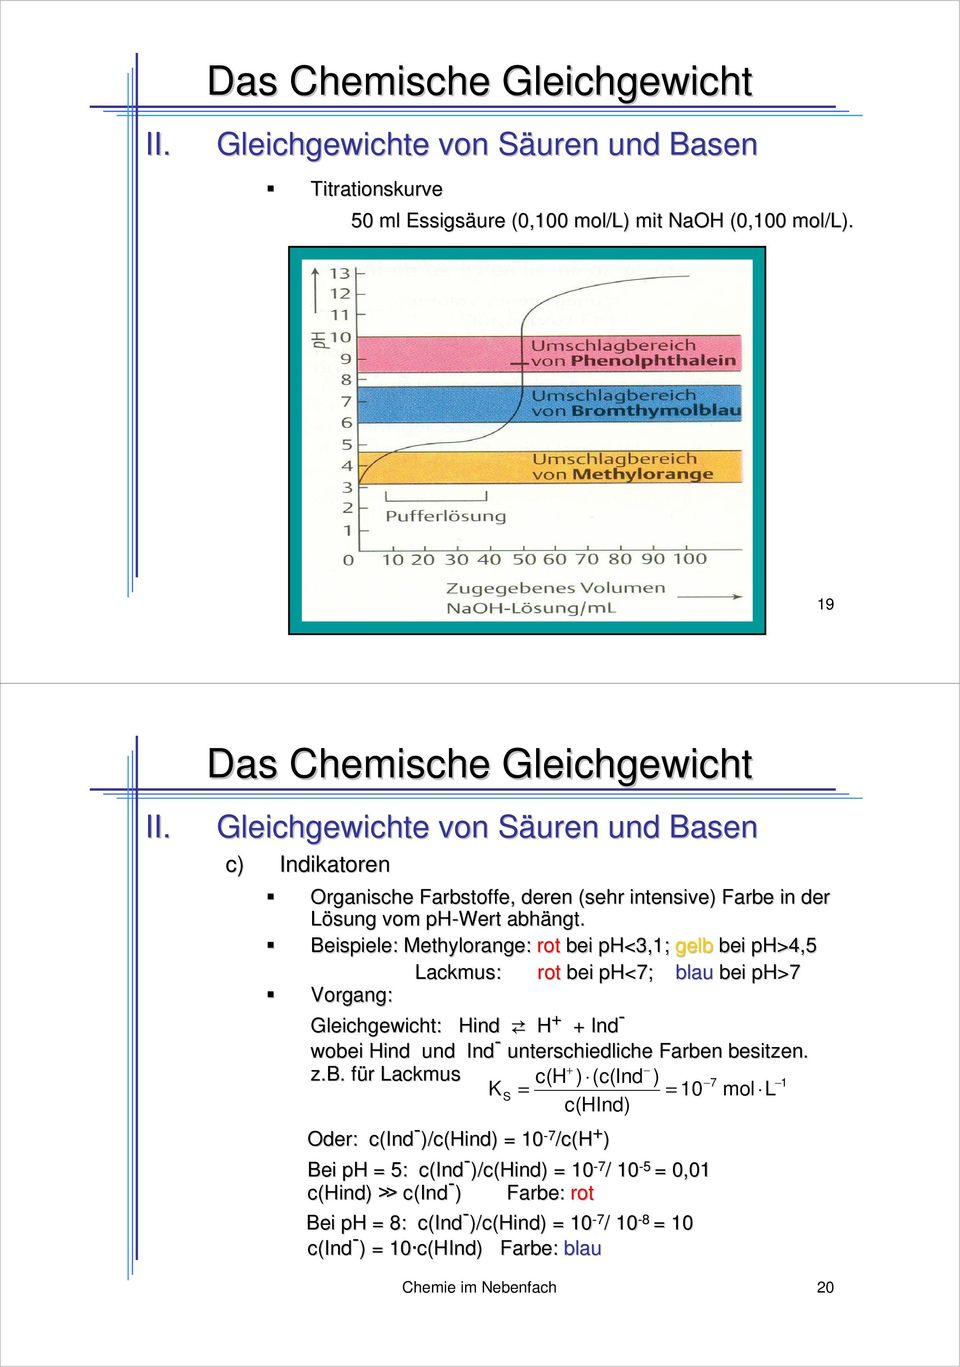 Beispiele: Methylrange: rt bei ph<,; gelb bei ph>,5 Lackmus: rt bei ph<7; blau bei ph>7 Vrgang: Gleichgewicht: Hind H Ind - wbei Hind und Ind -